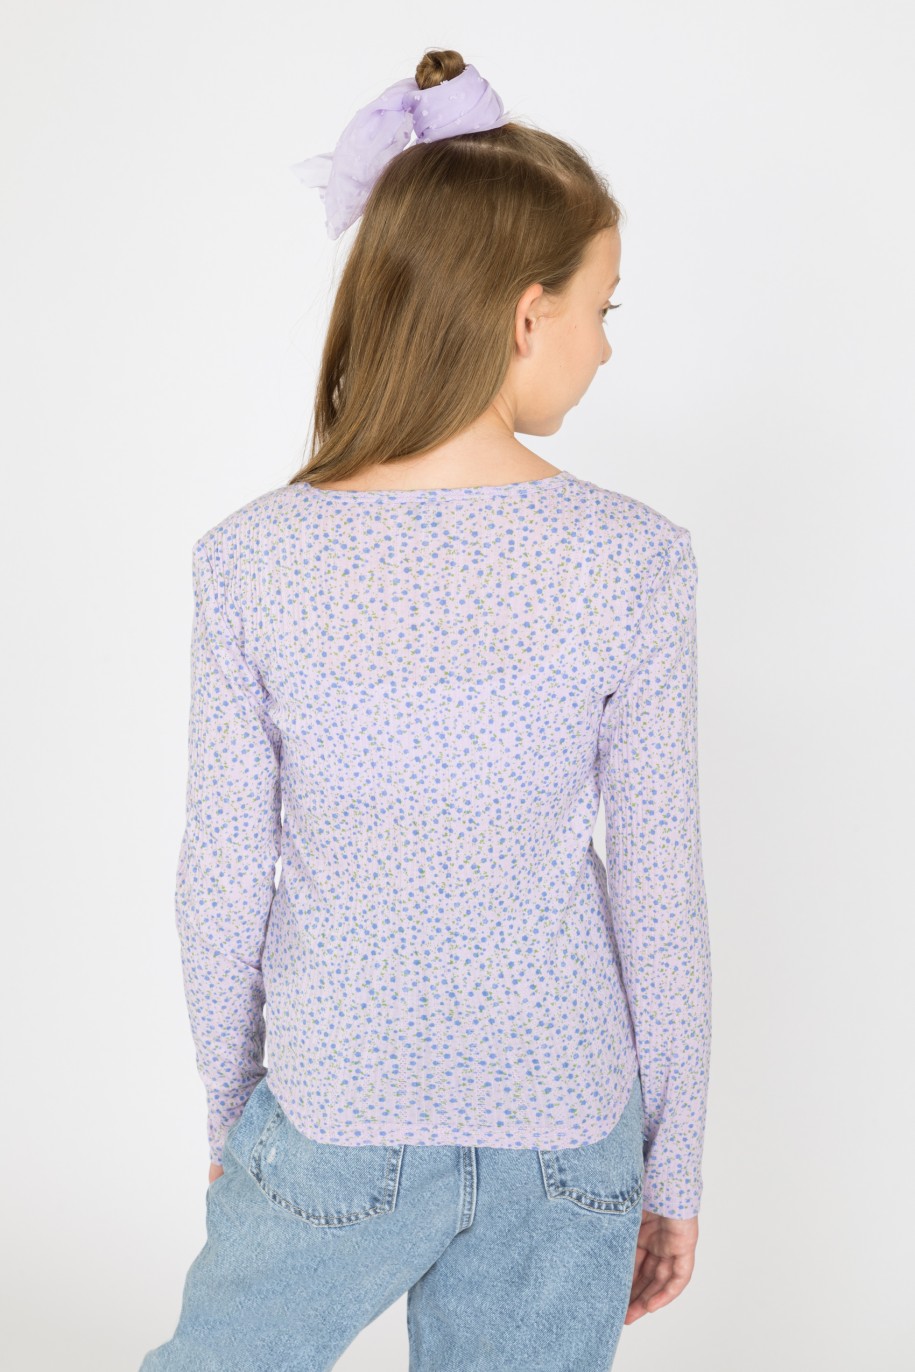 Fioletowa bluzka z długim rękawem z wzorem w kwiaty dla dziewczyny - 41678